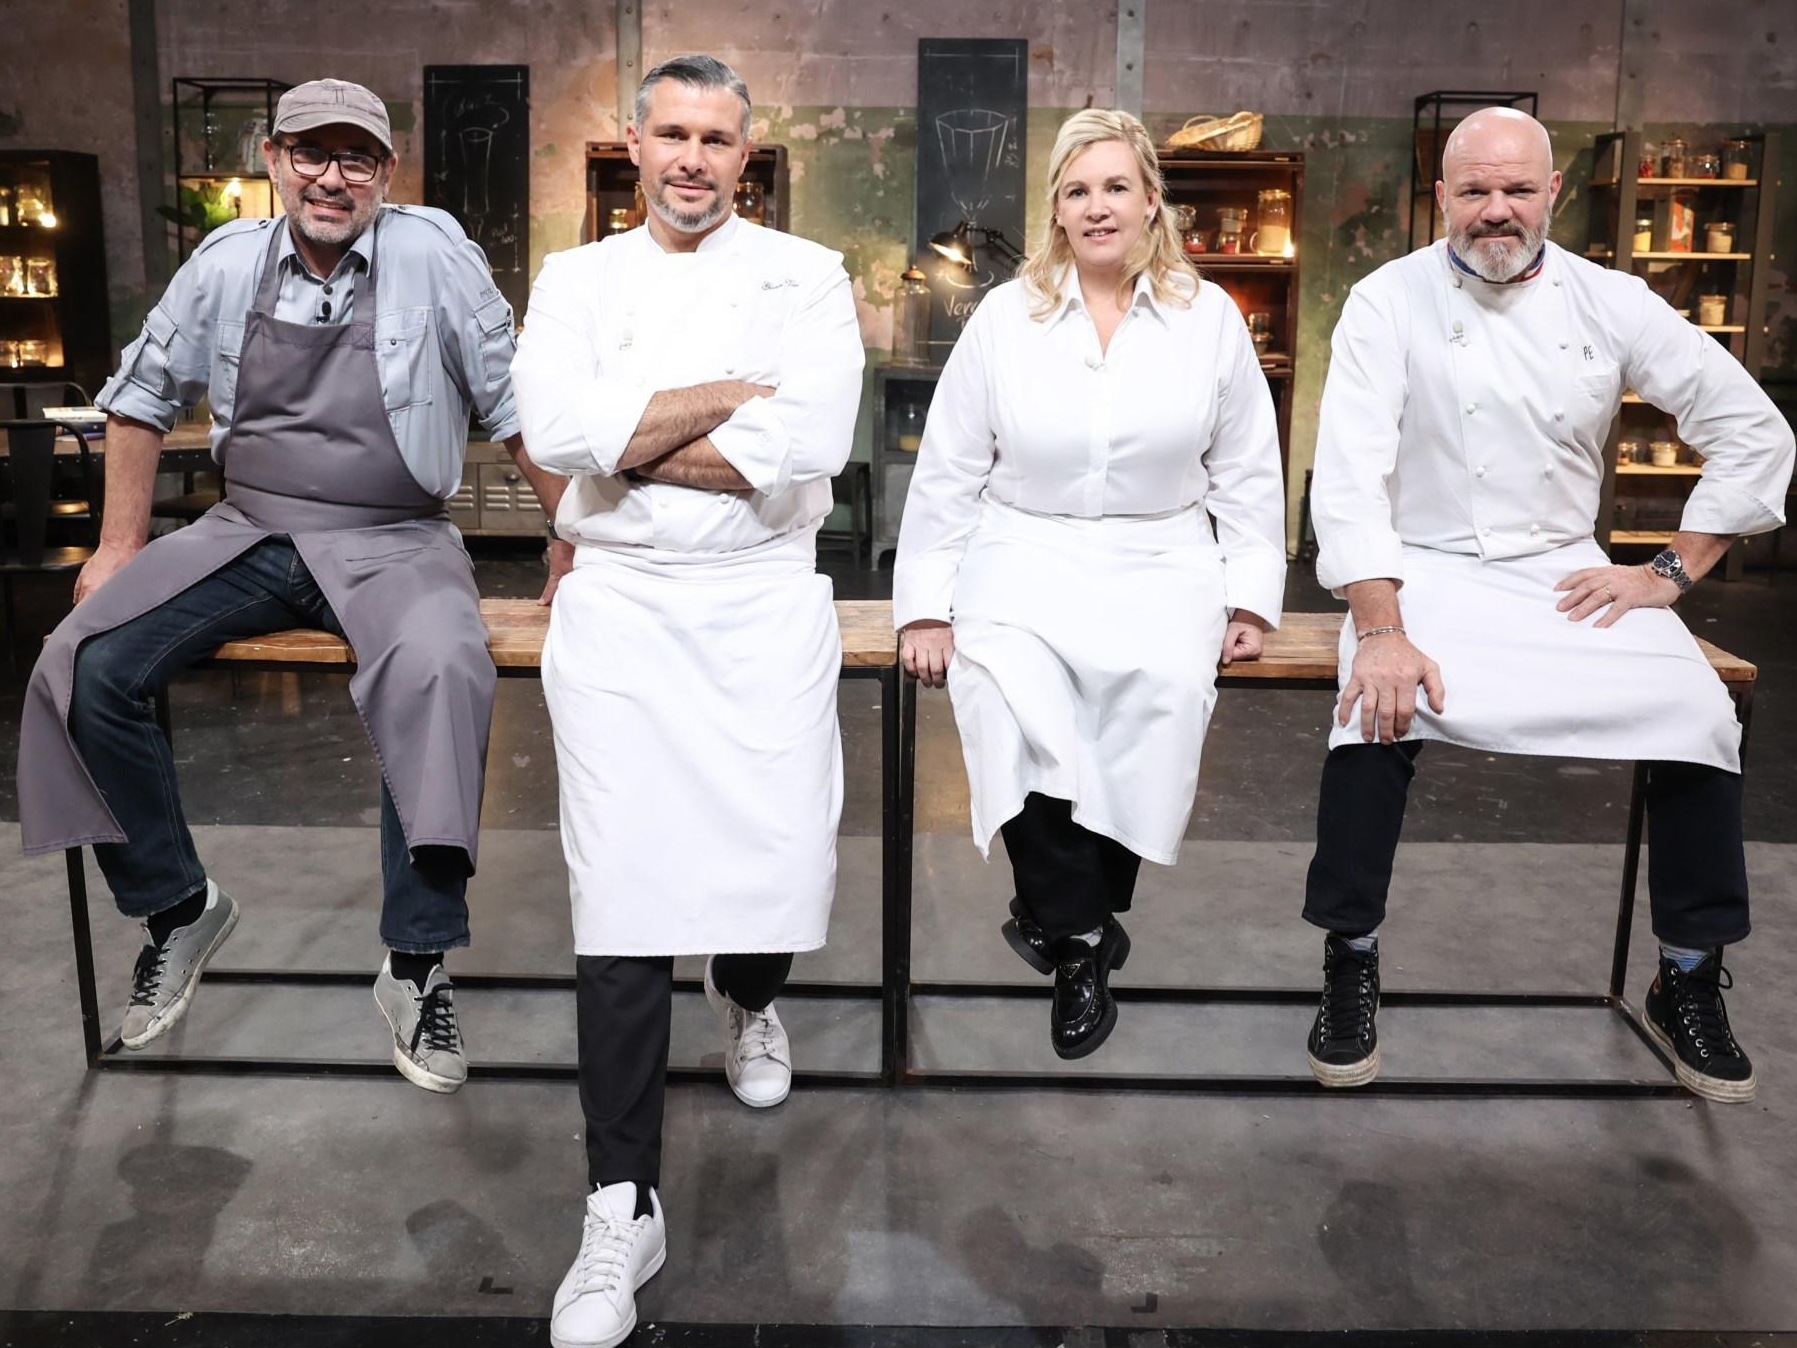 Avec les nouvelles étoiles d'Hélène Darroze et de Philippe Etchebest, le jury de cette saison de Top Chef compte, en tout, 13 étoiles Michelin. M6/Marie Etchegoyen